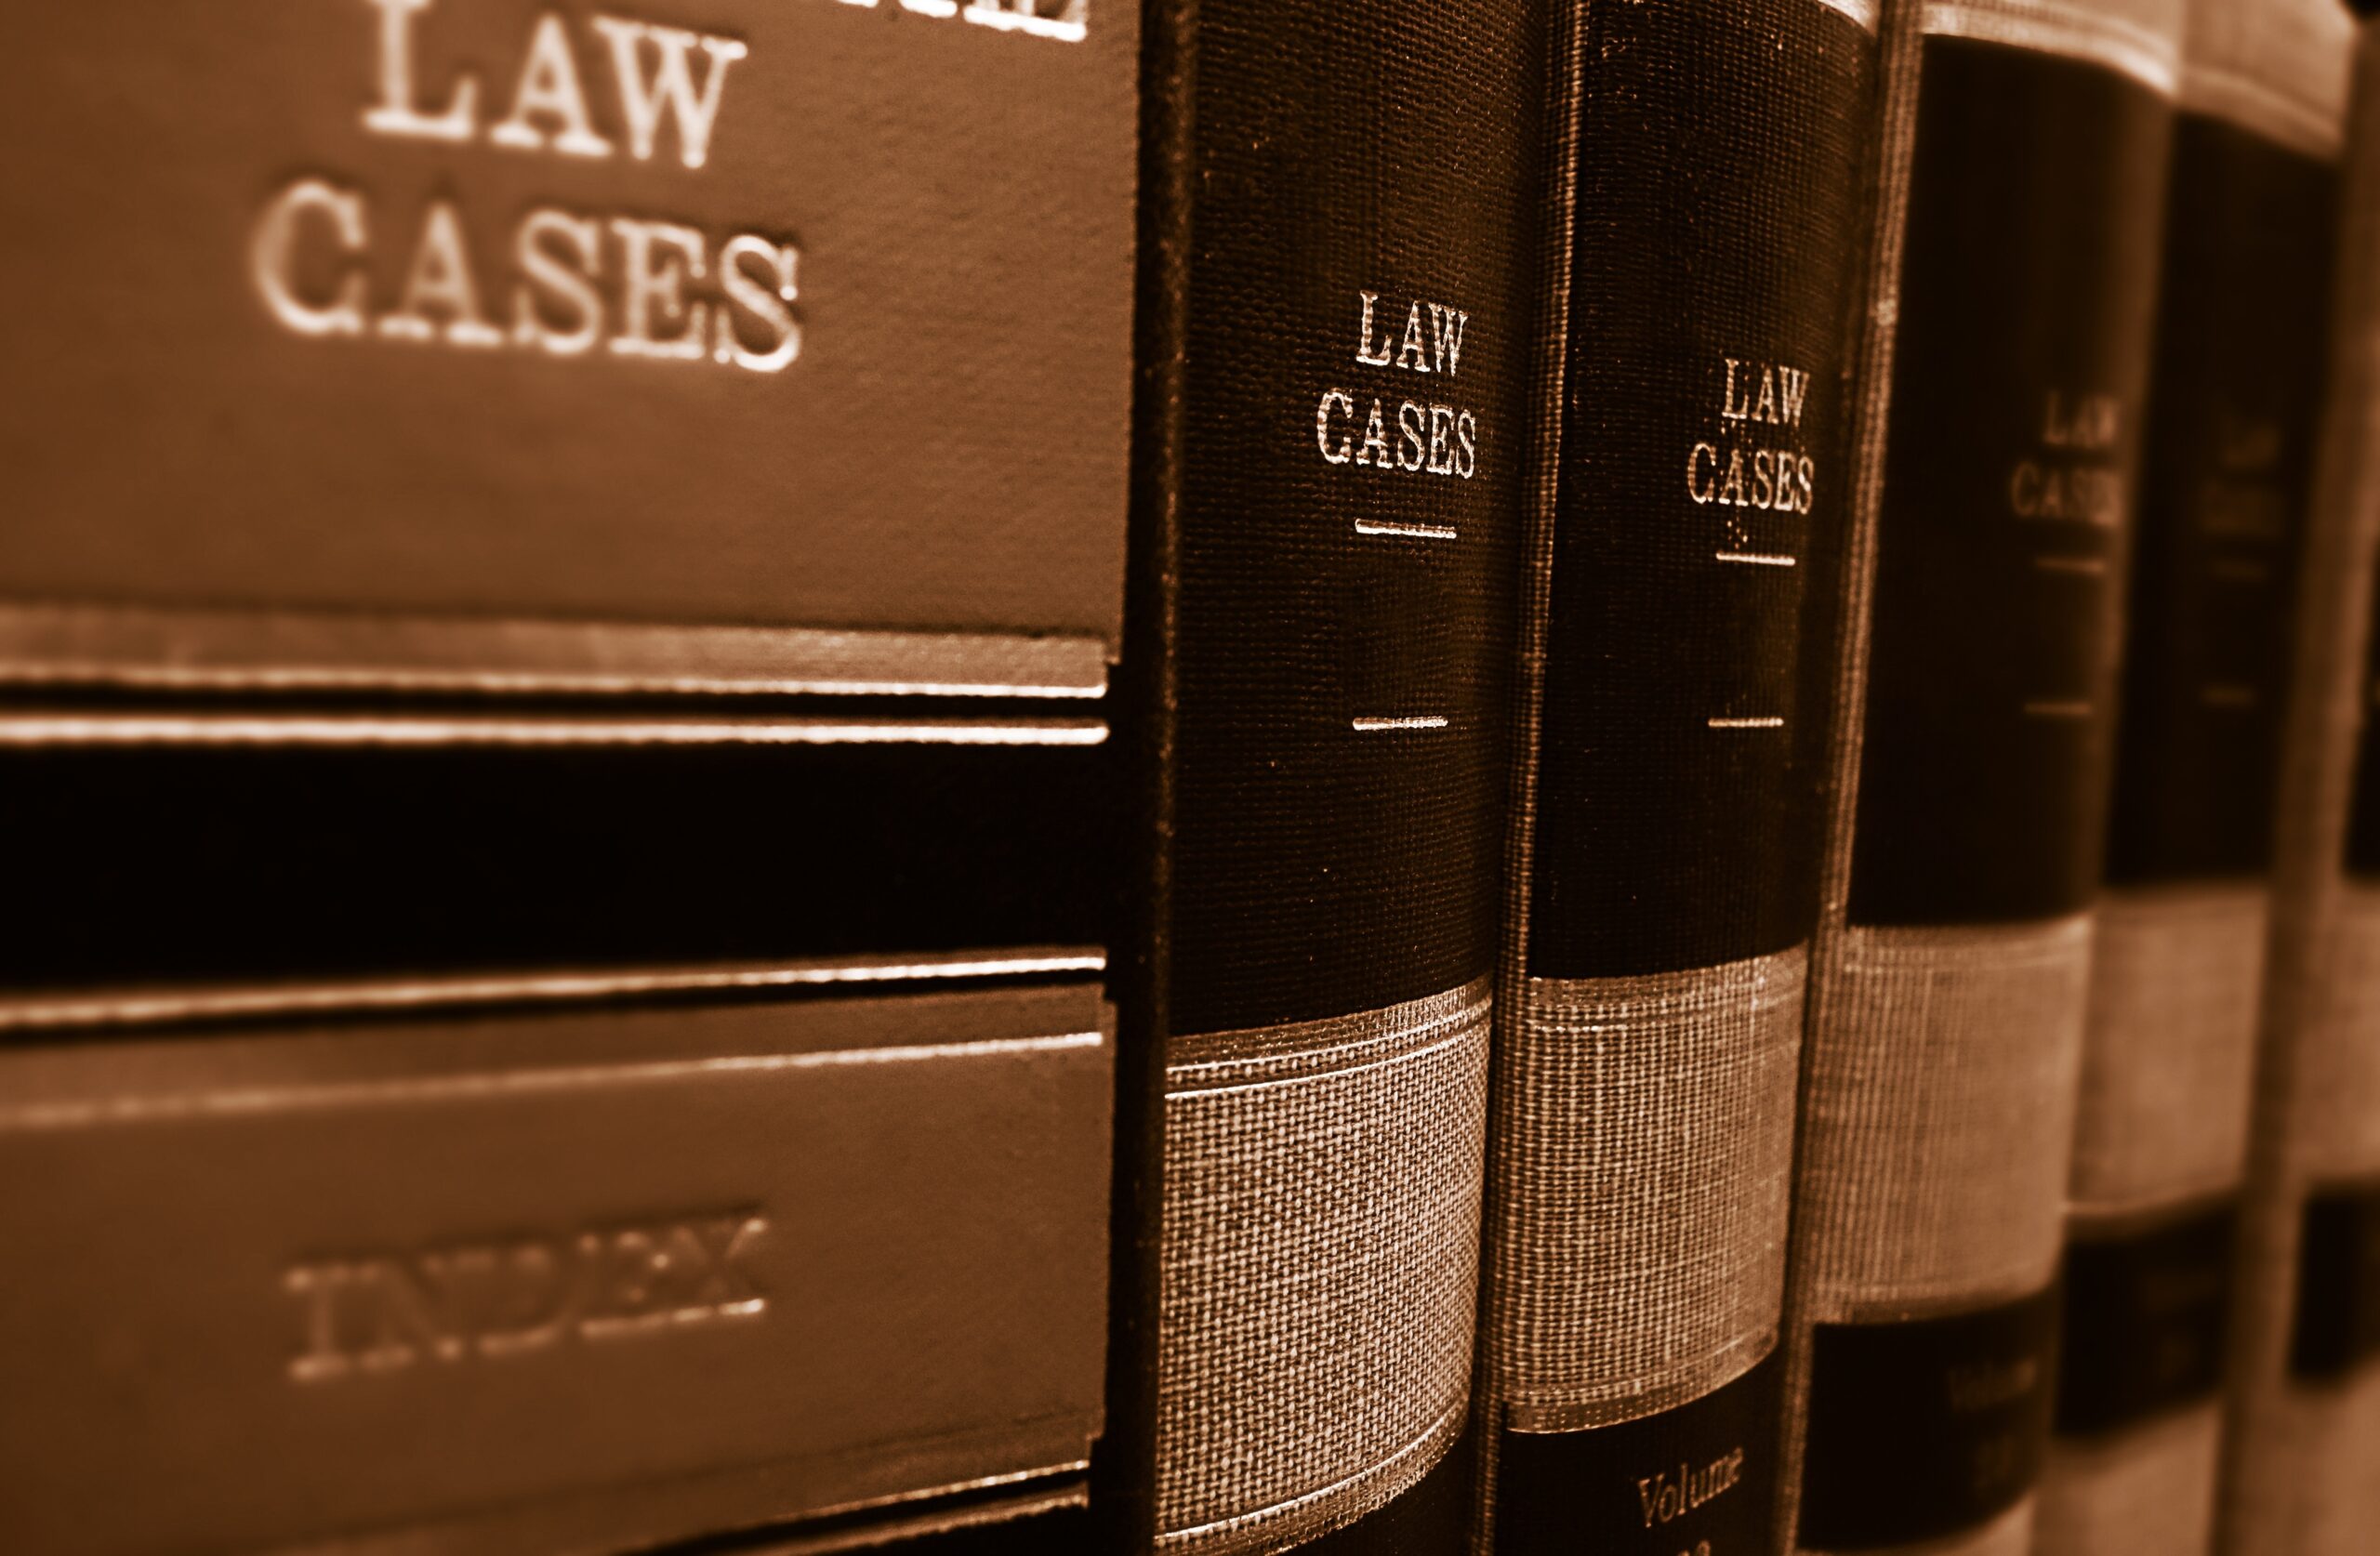 Law cases stock photo